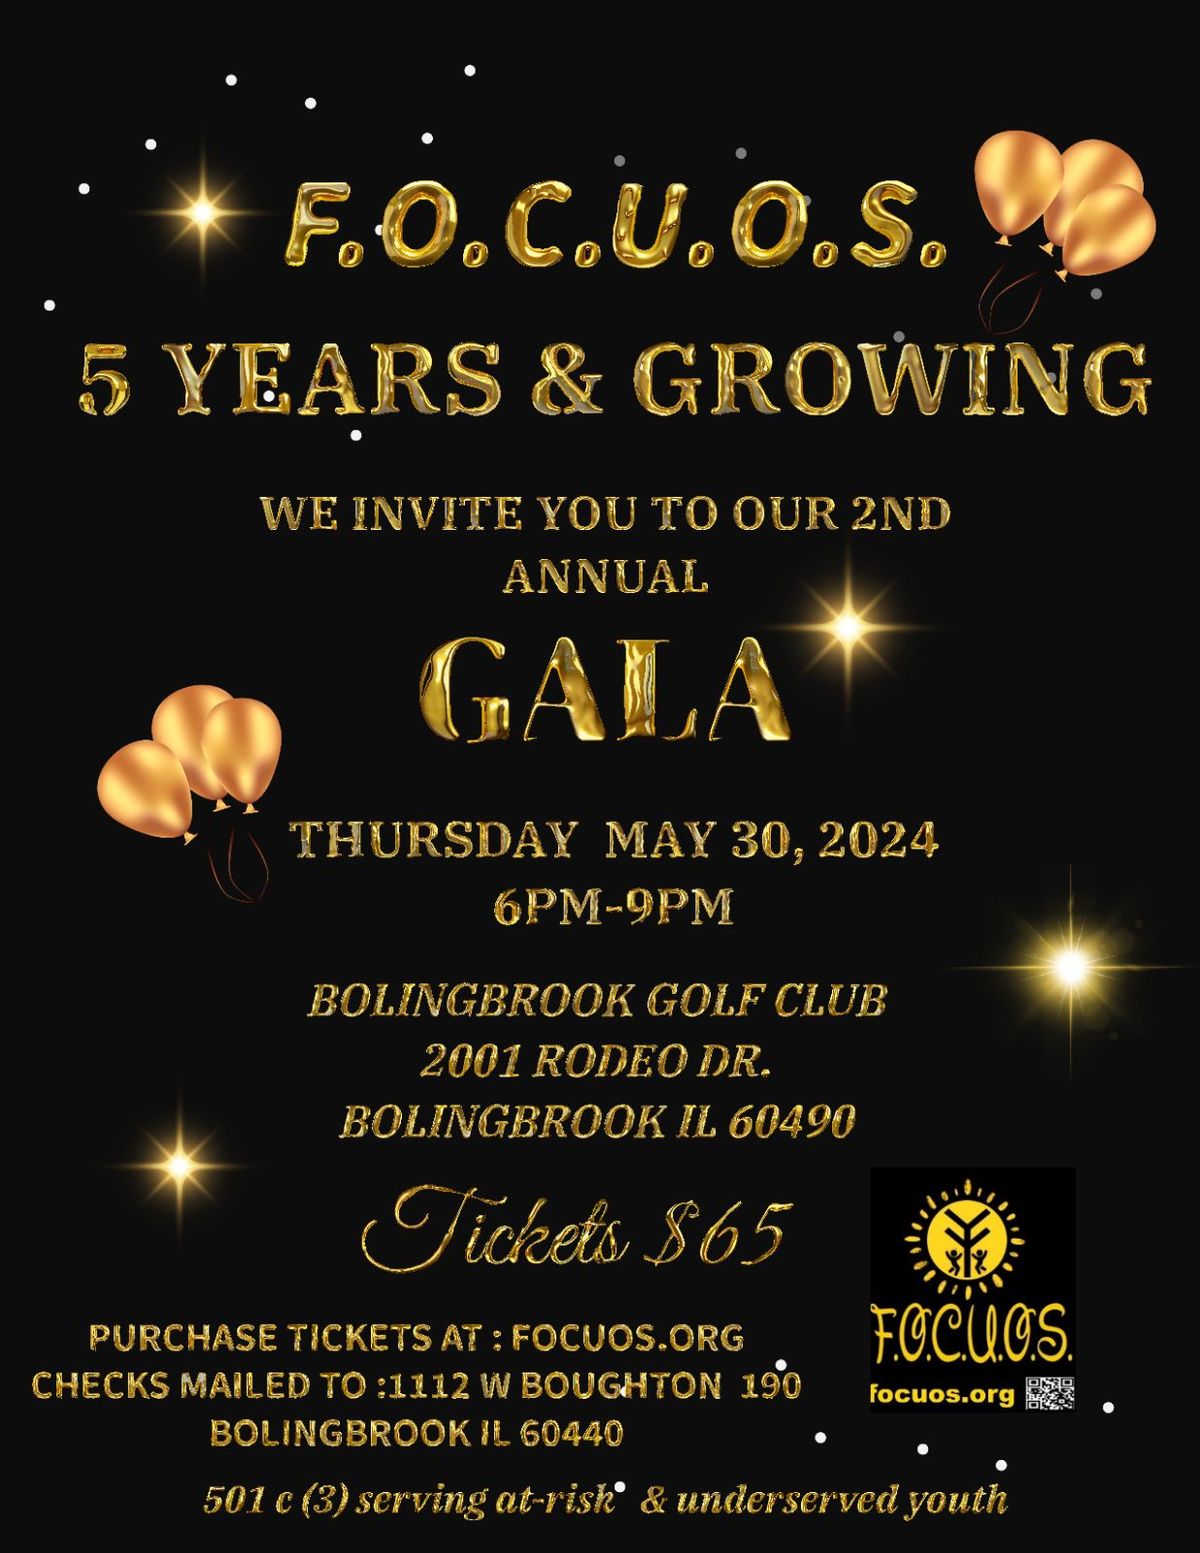 F.O.C.U.O.S. 5 Years & Growing Annual GALA